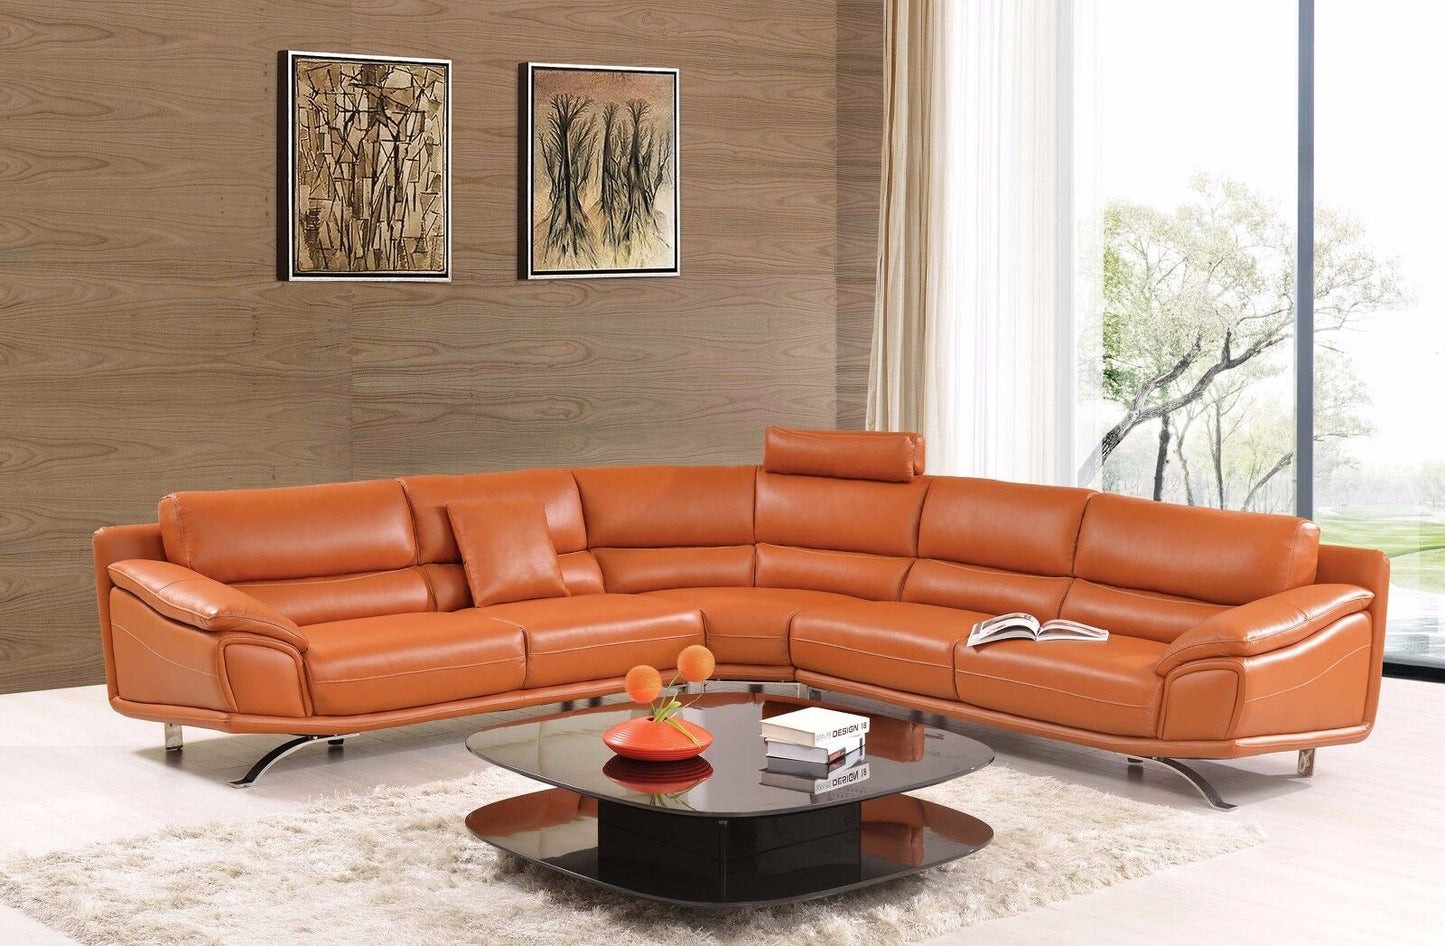 Modern Living Room Furniture Orange Bonded Leather Large Sectional Sofa Set Soft and comfortable For indoor livingroom furniture